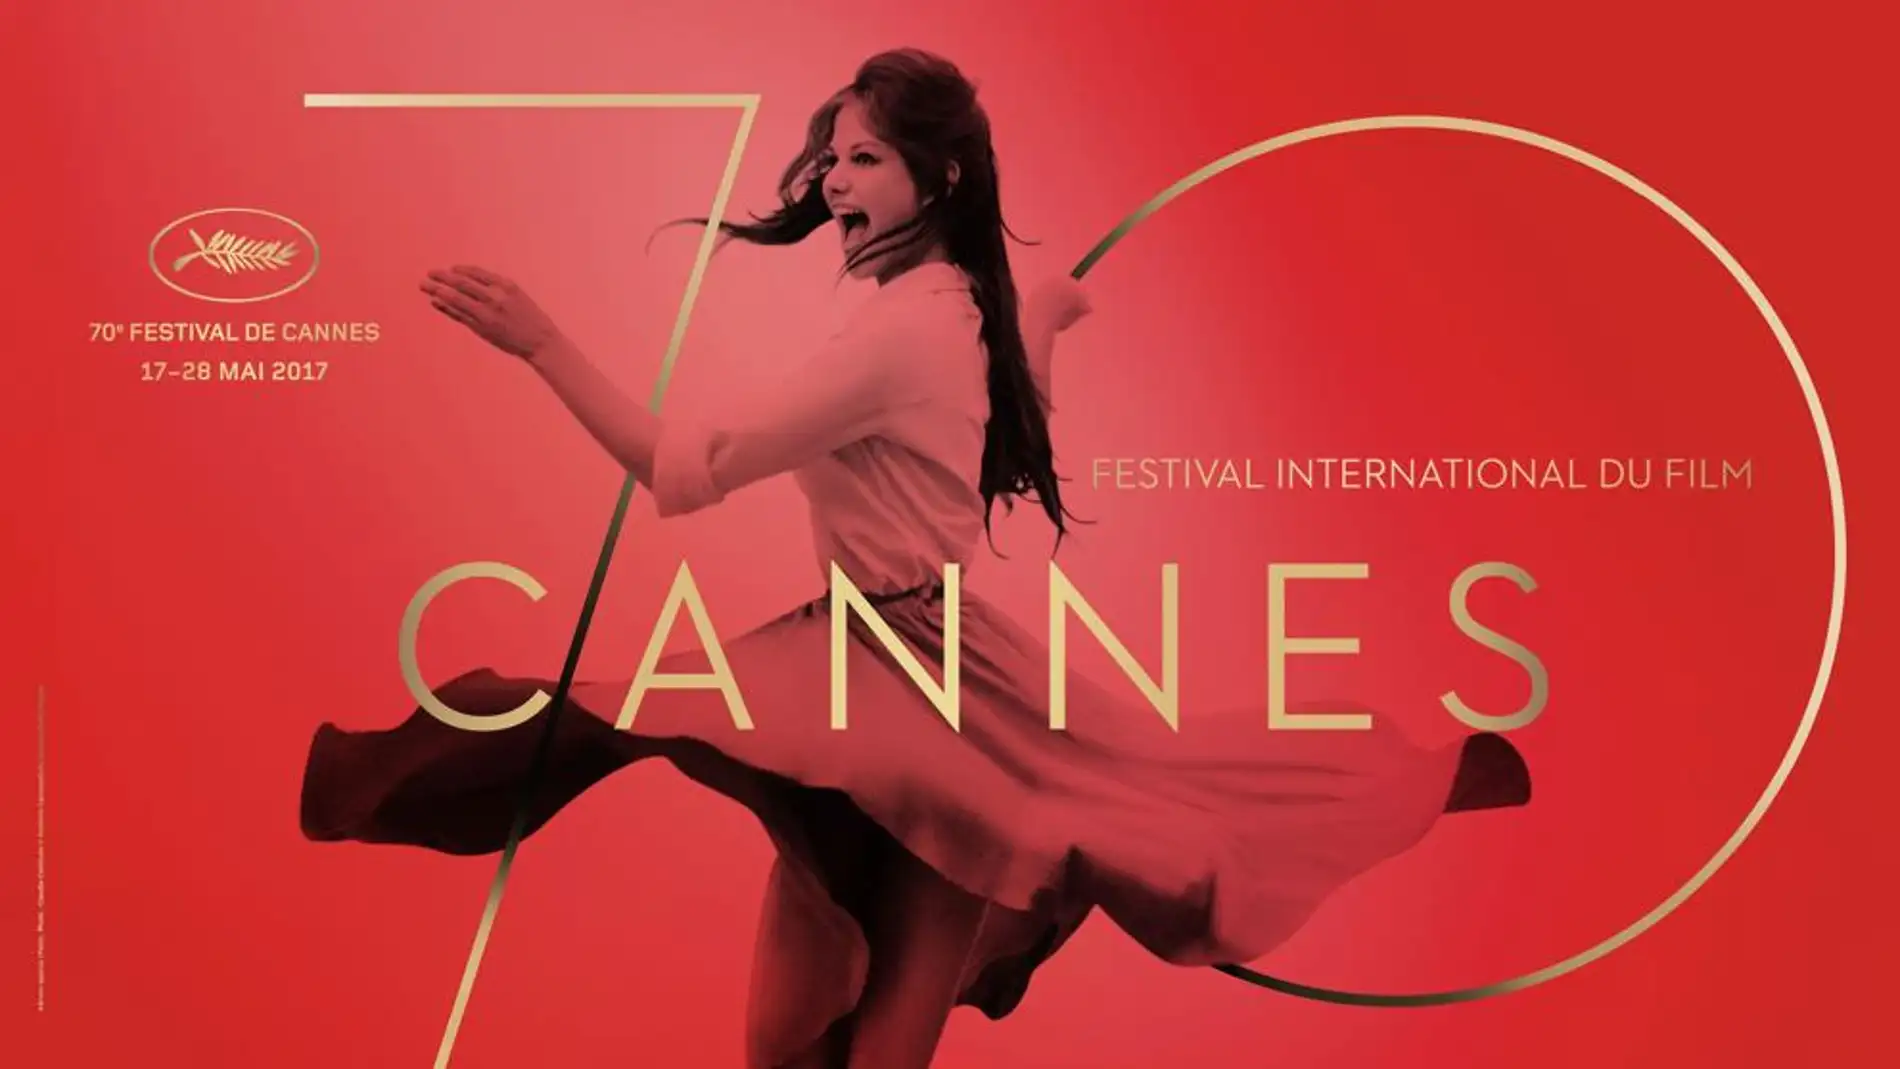 Cannes adelgaza a la actriz Claudia Cardinale para su cartel